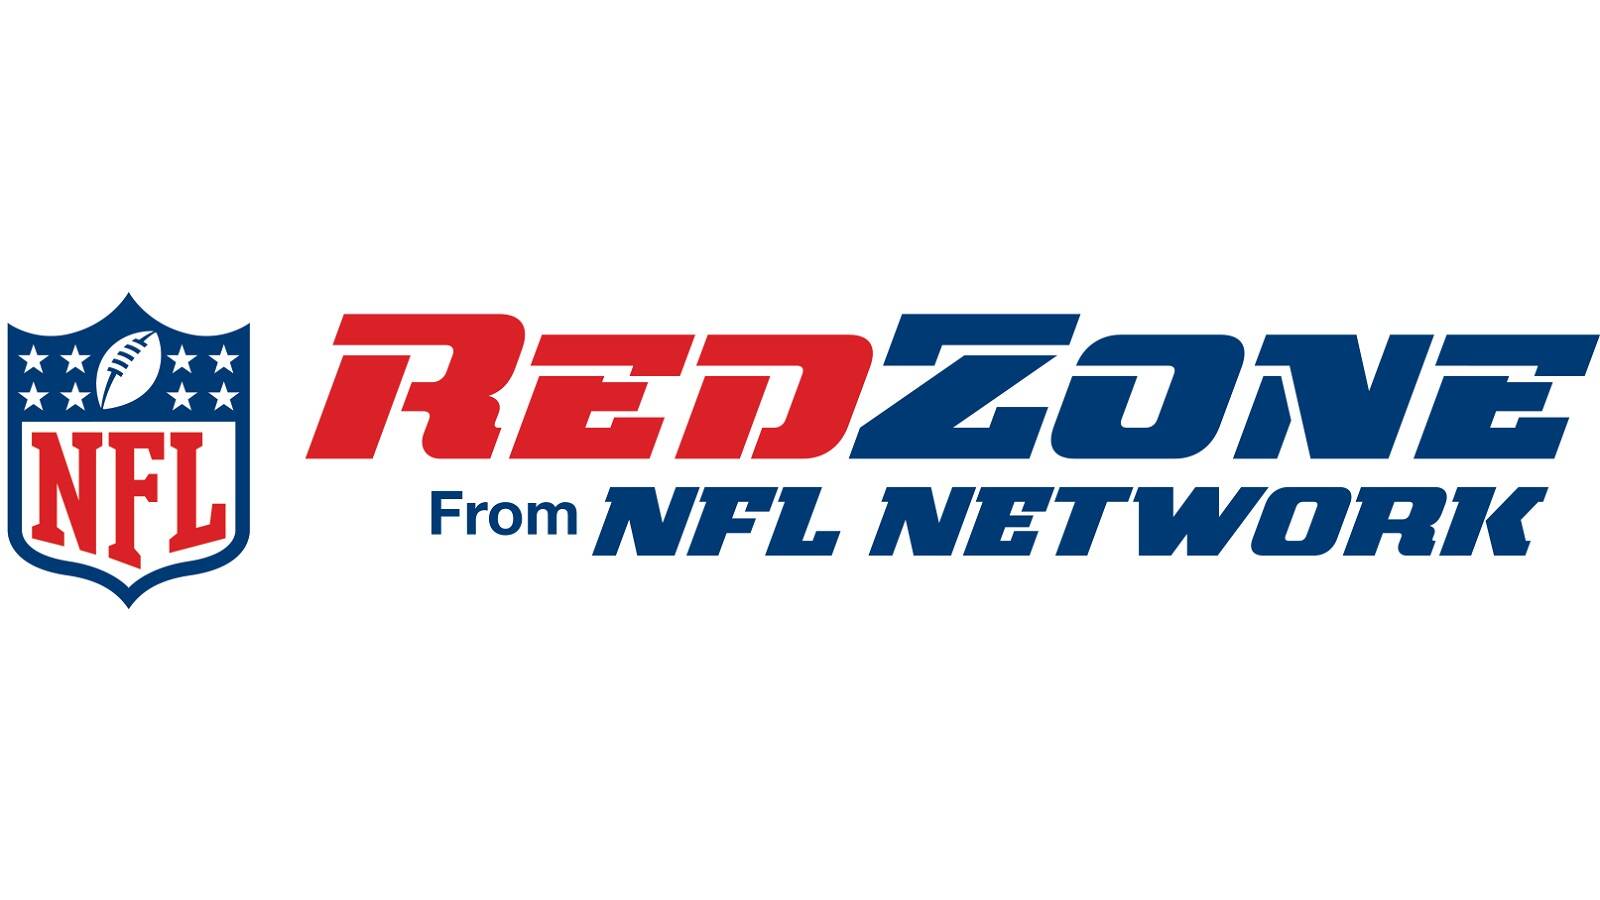 How to watch NFL RedZone